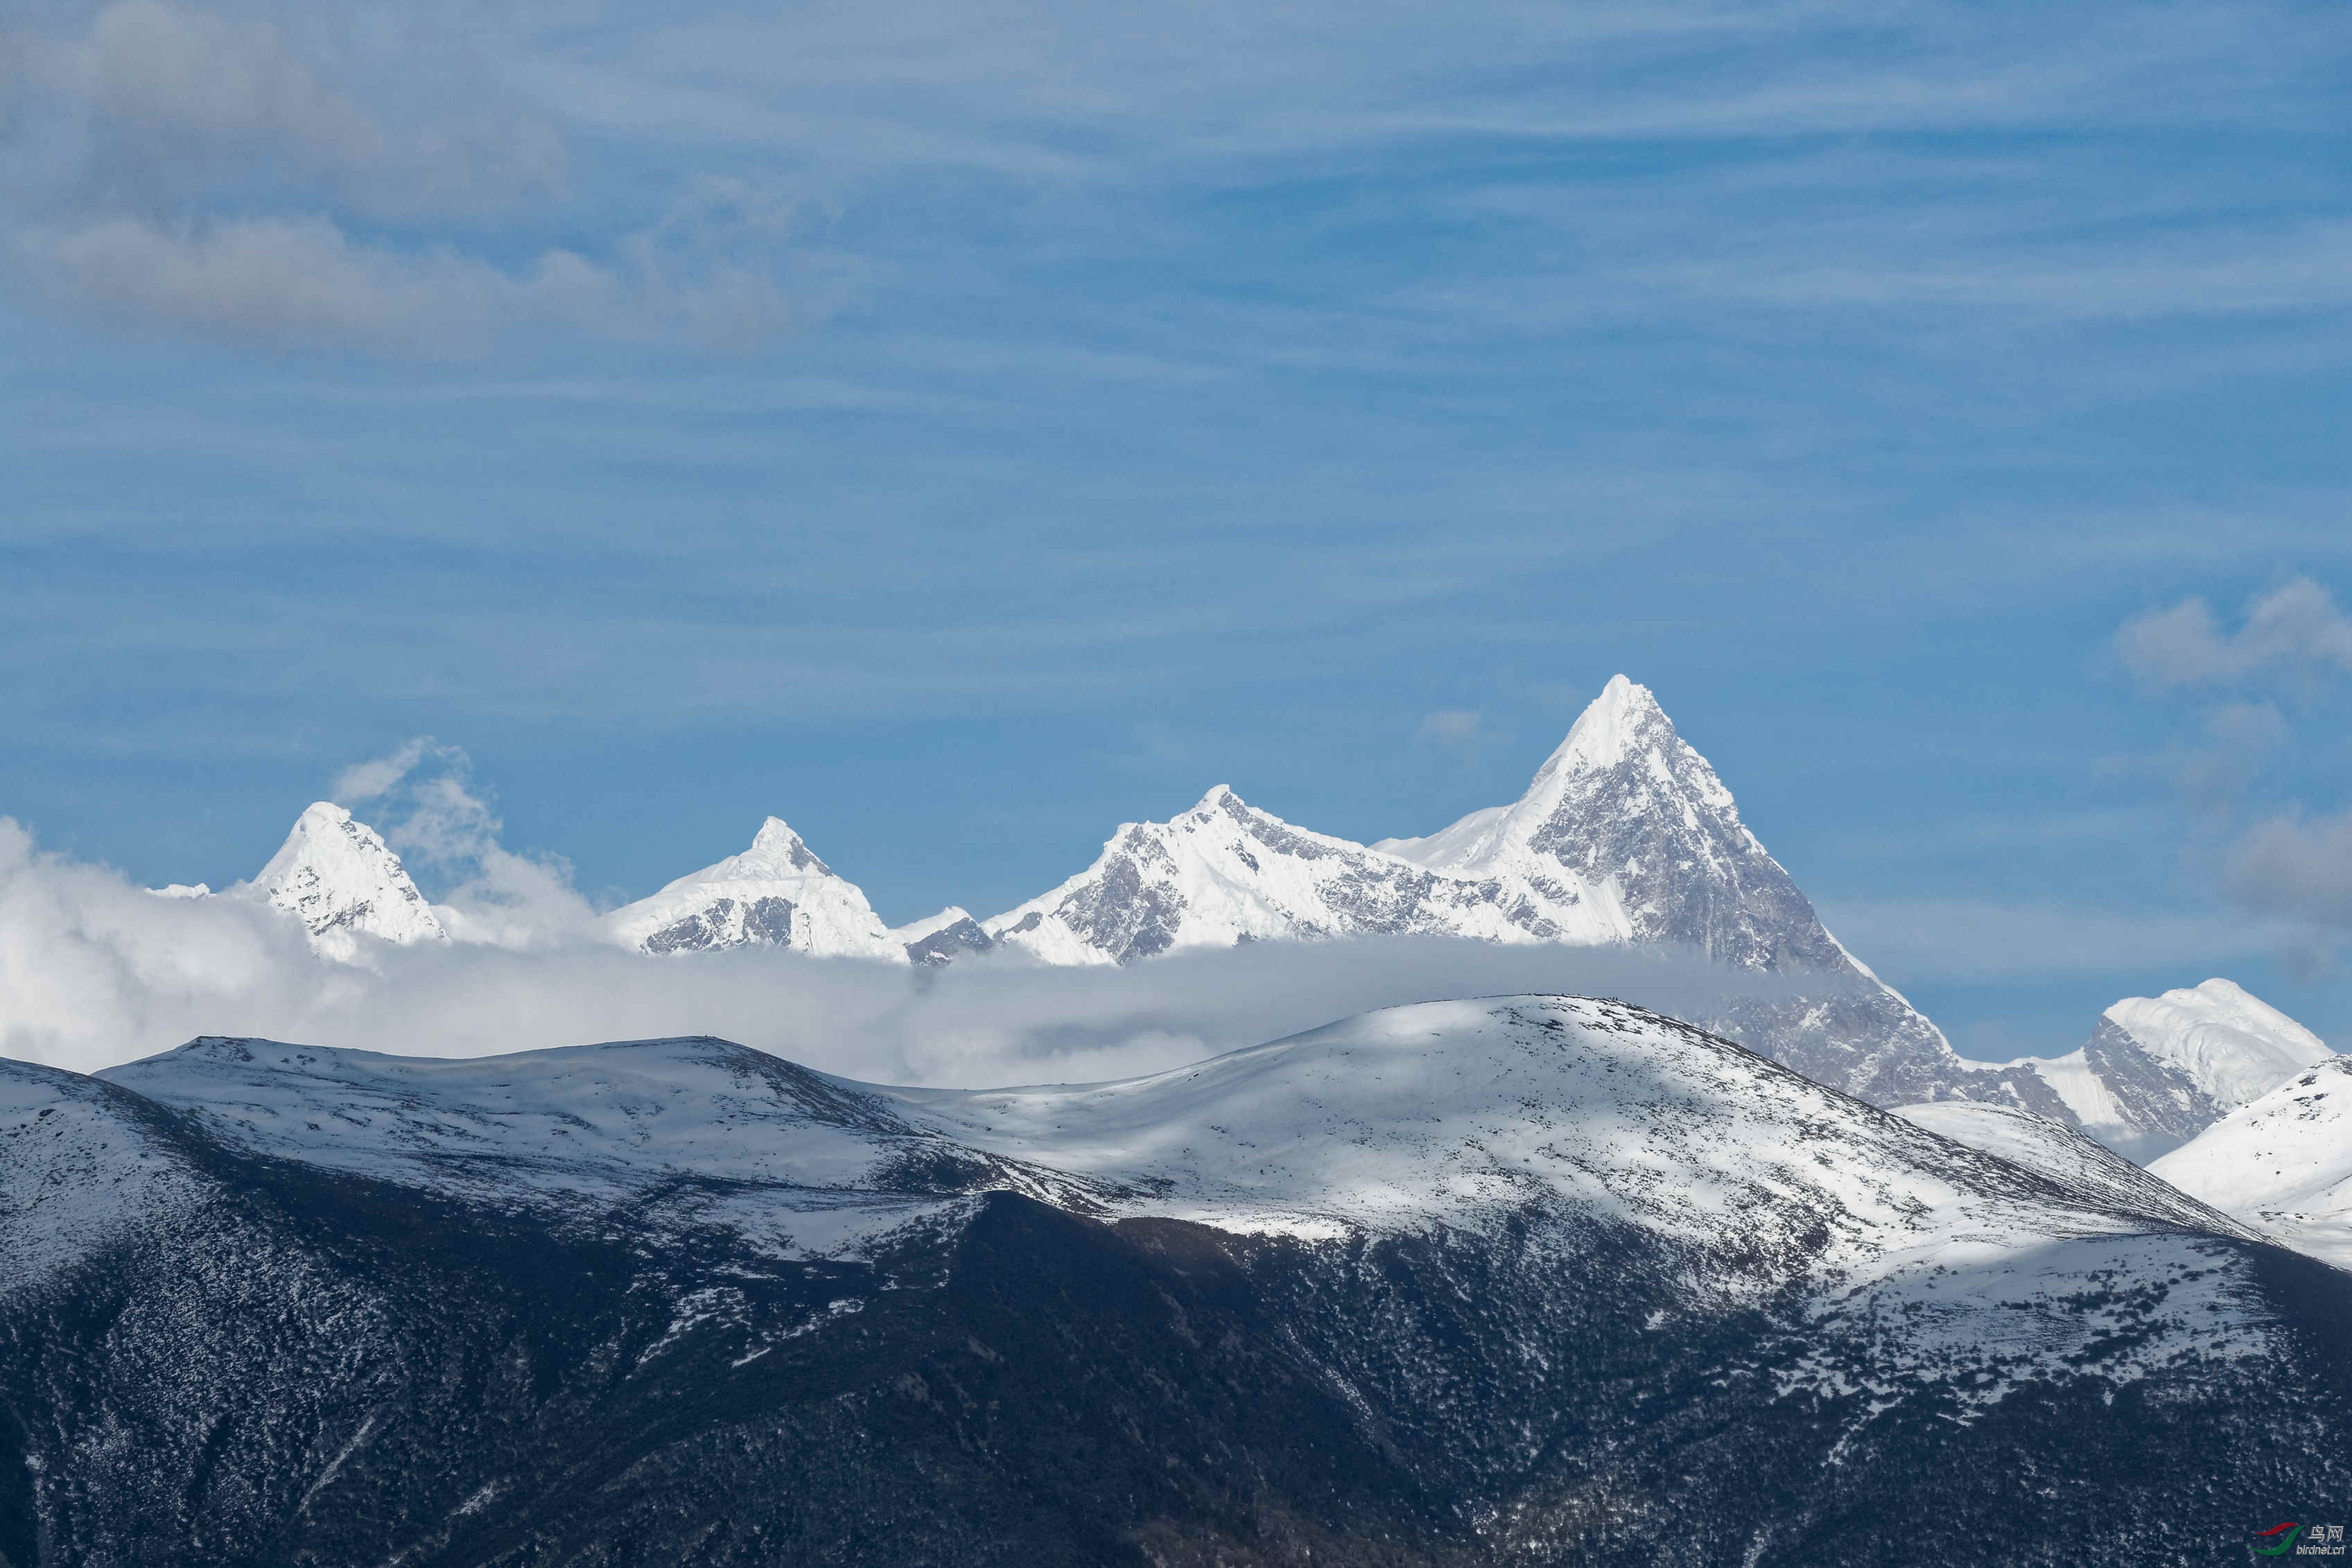 地处喜马拉雅山脉,念青唐古拉山脉和横断山脉的交会处